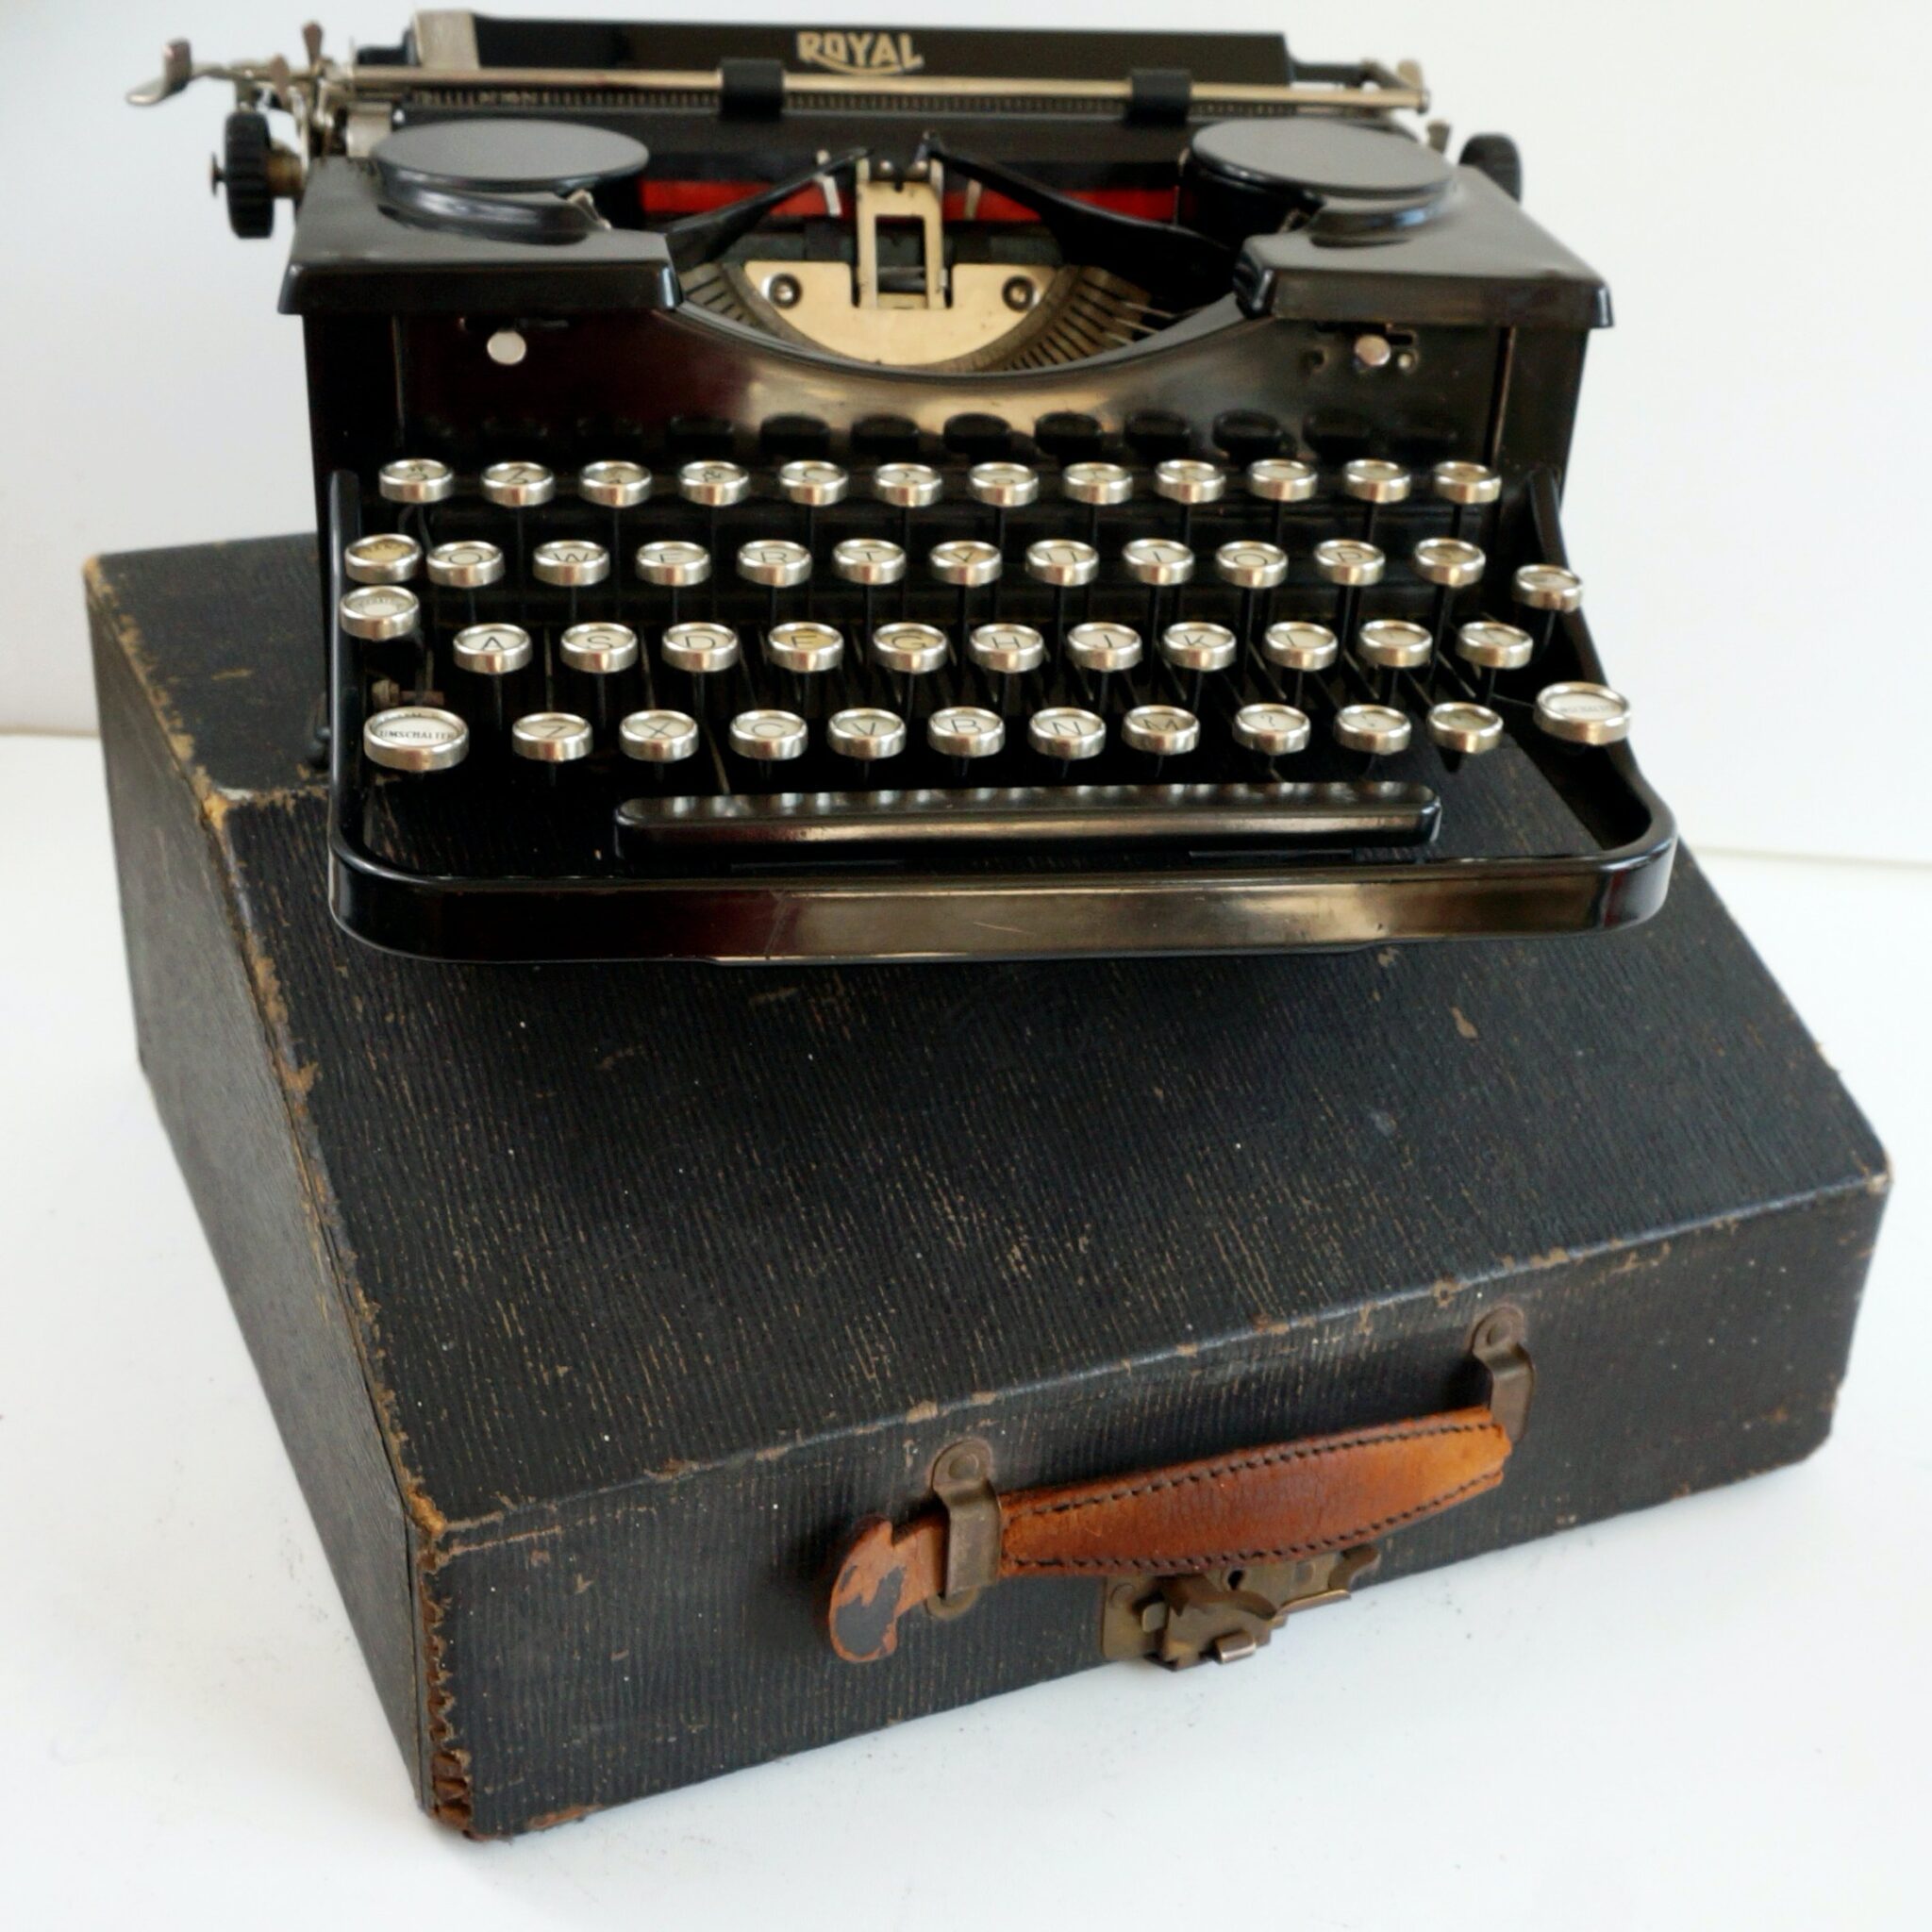 royal book typewriter typeface